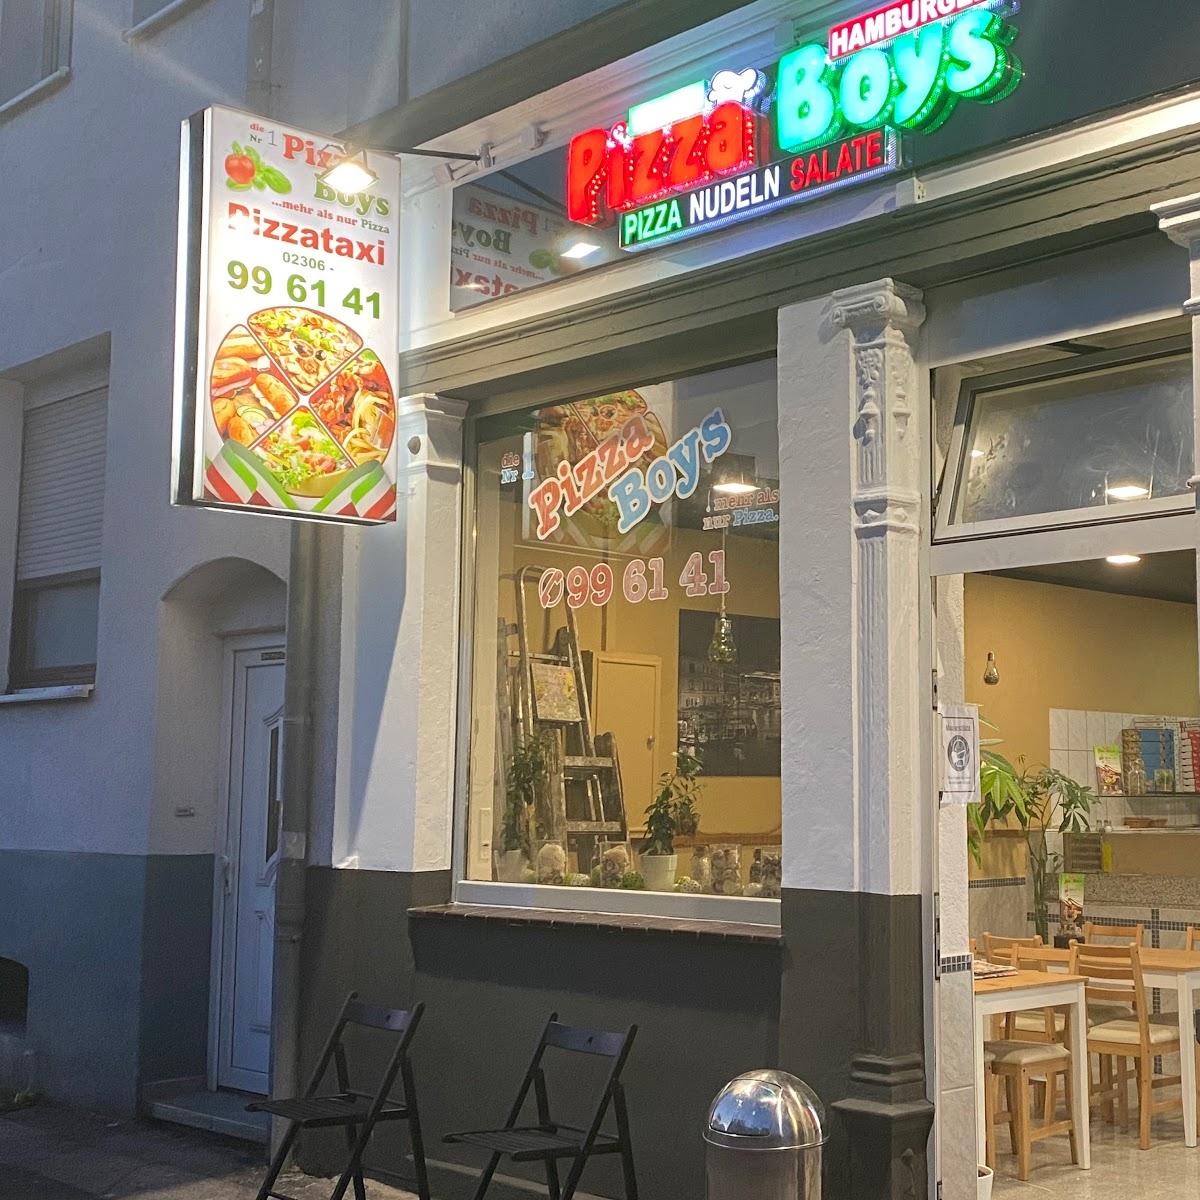 Restaurant "Pizza Boys" in Lünen